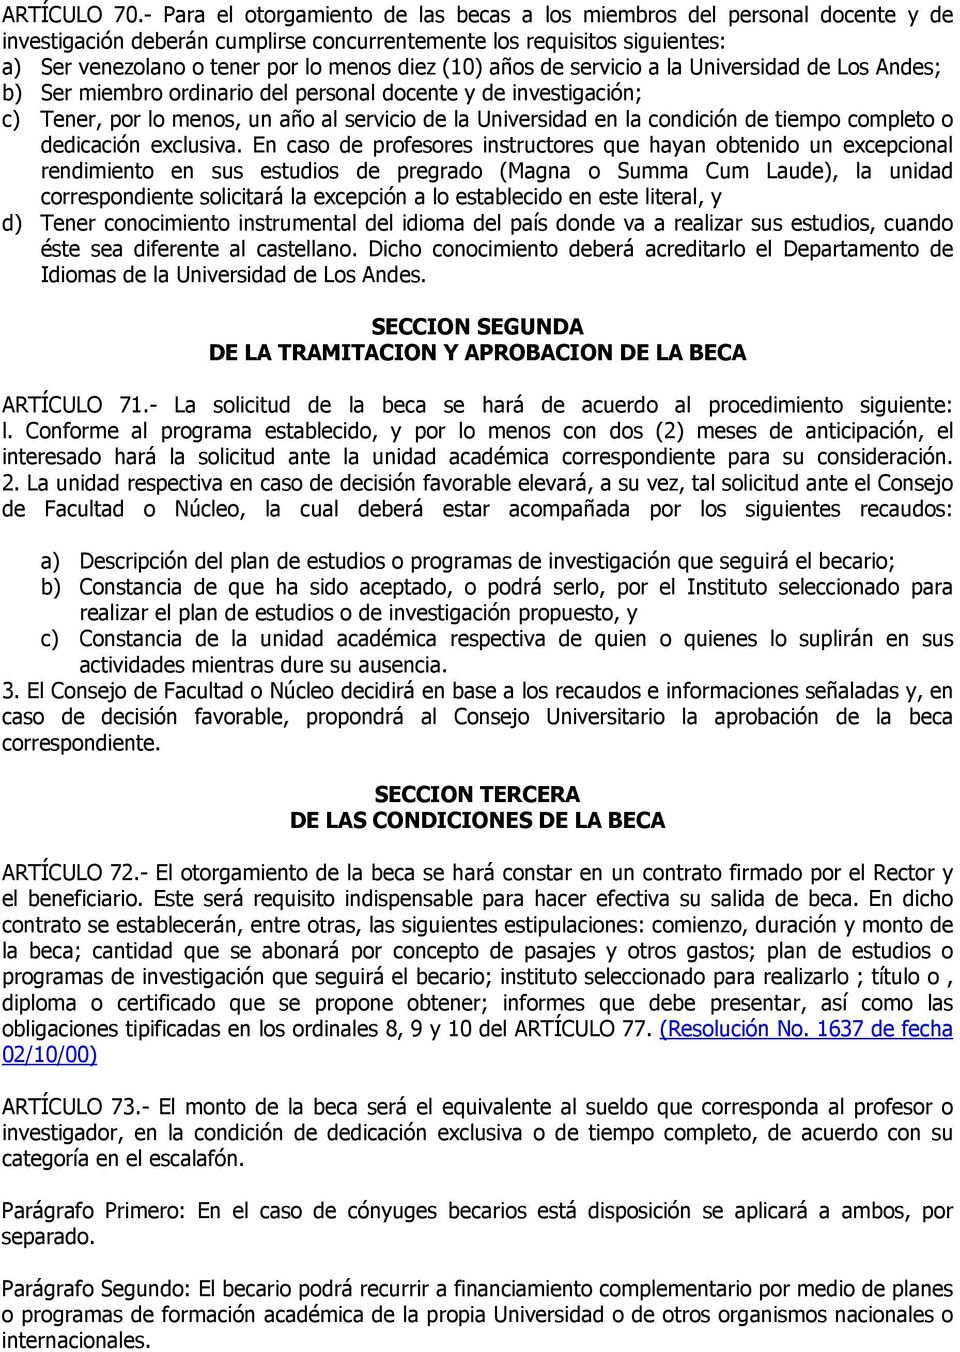 (10) años de servicio a la Universidad de Los Andes; b) Ser miembro ordinario del personal docente y de investigación; c) Tener, por lo menos, un año al servicio de la Universidad en la condición de